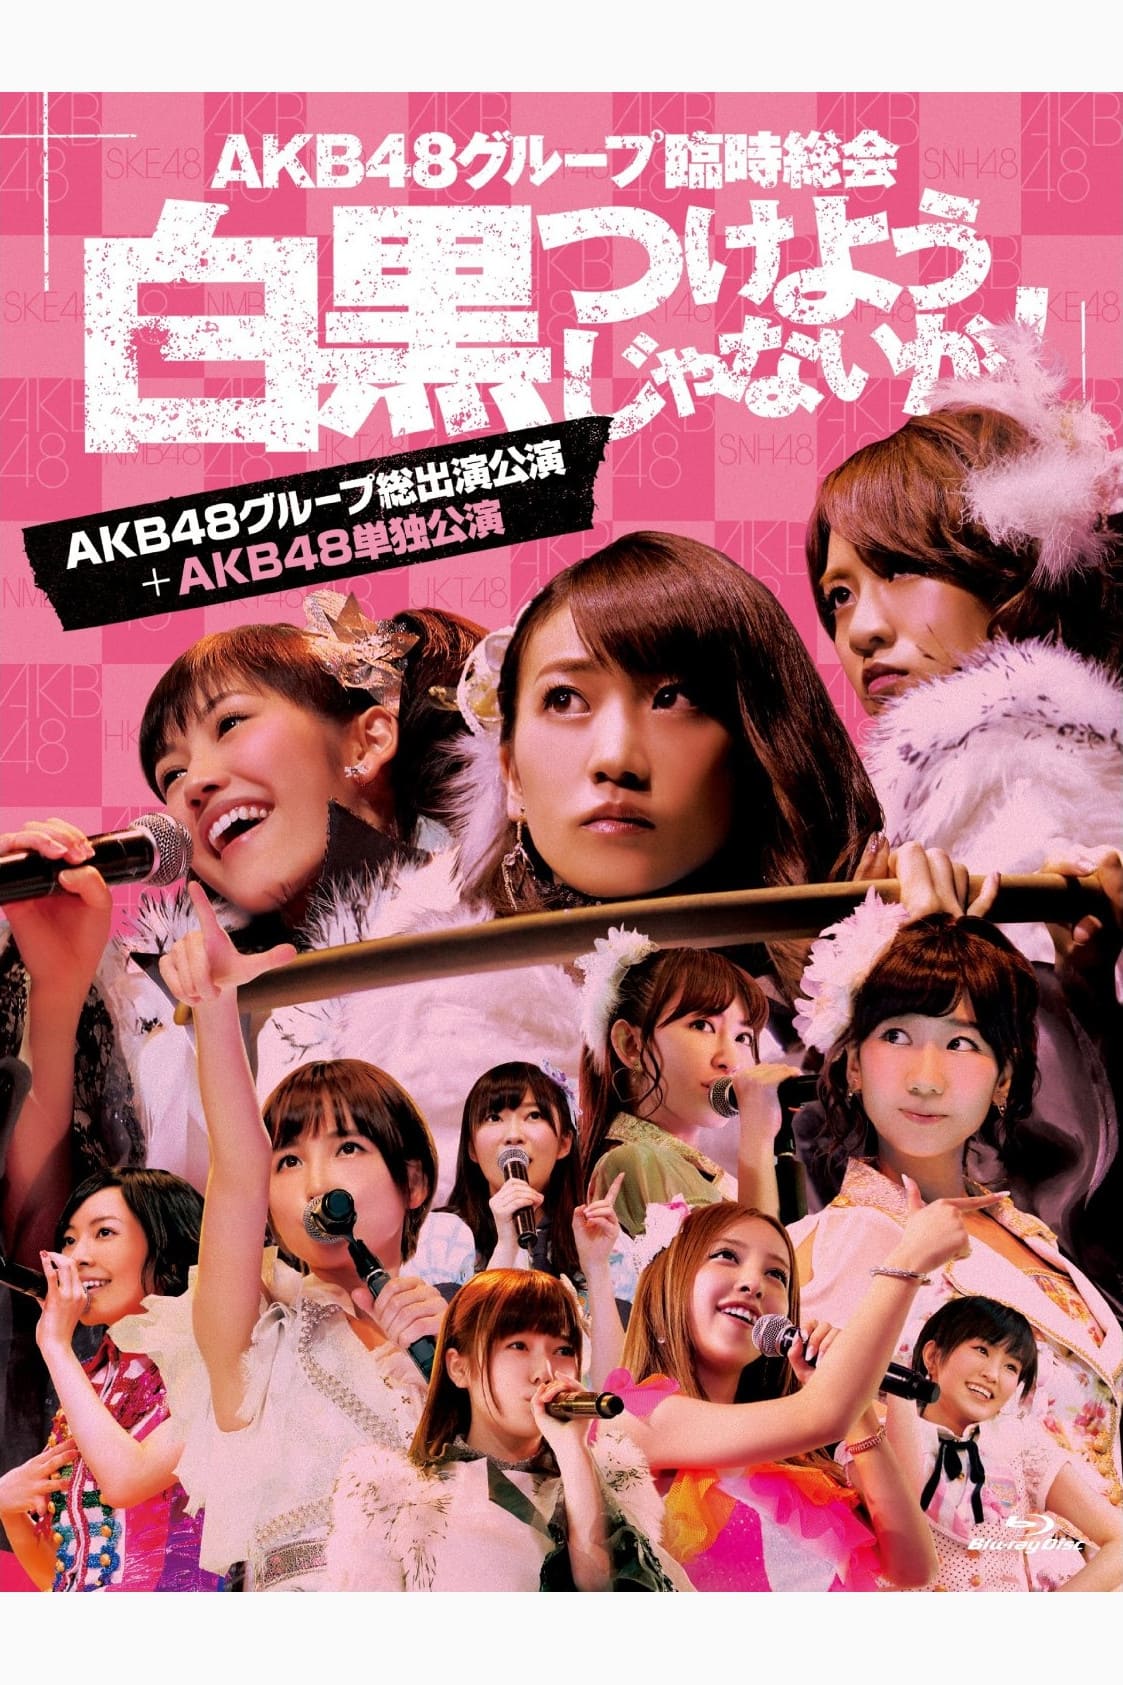 AKB48 Group Rinji Soukai - AKB48 Concert